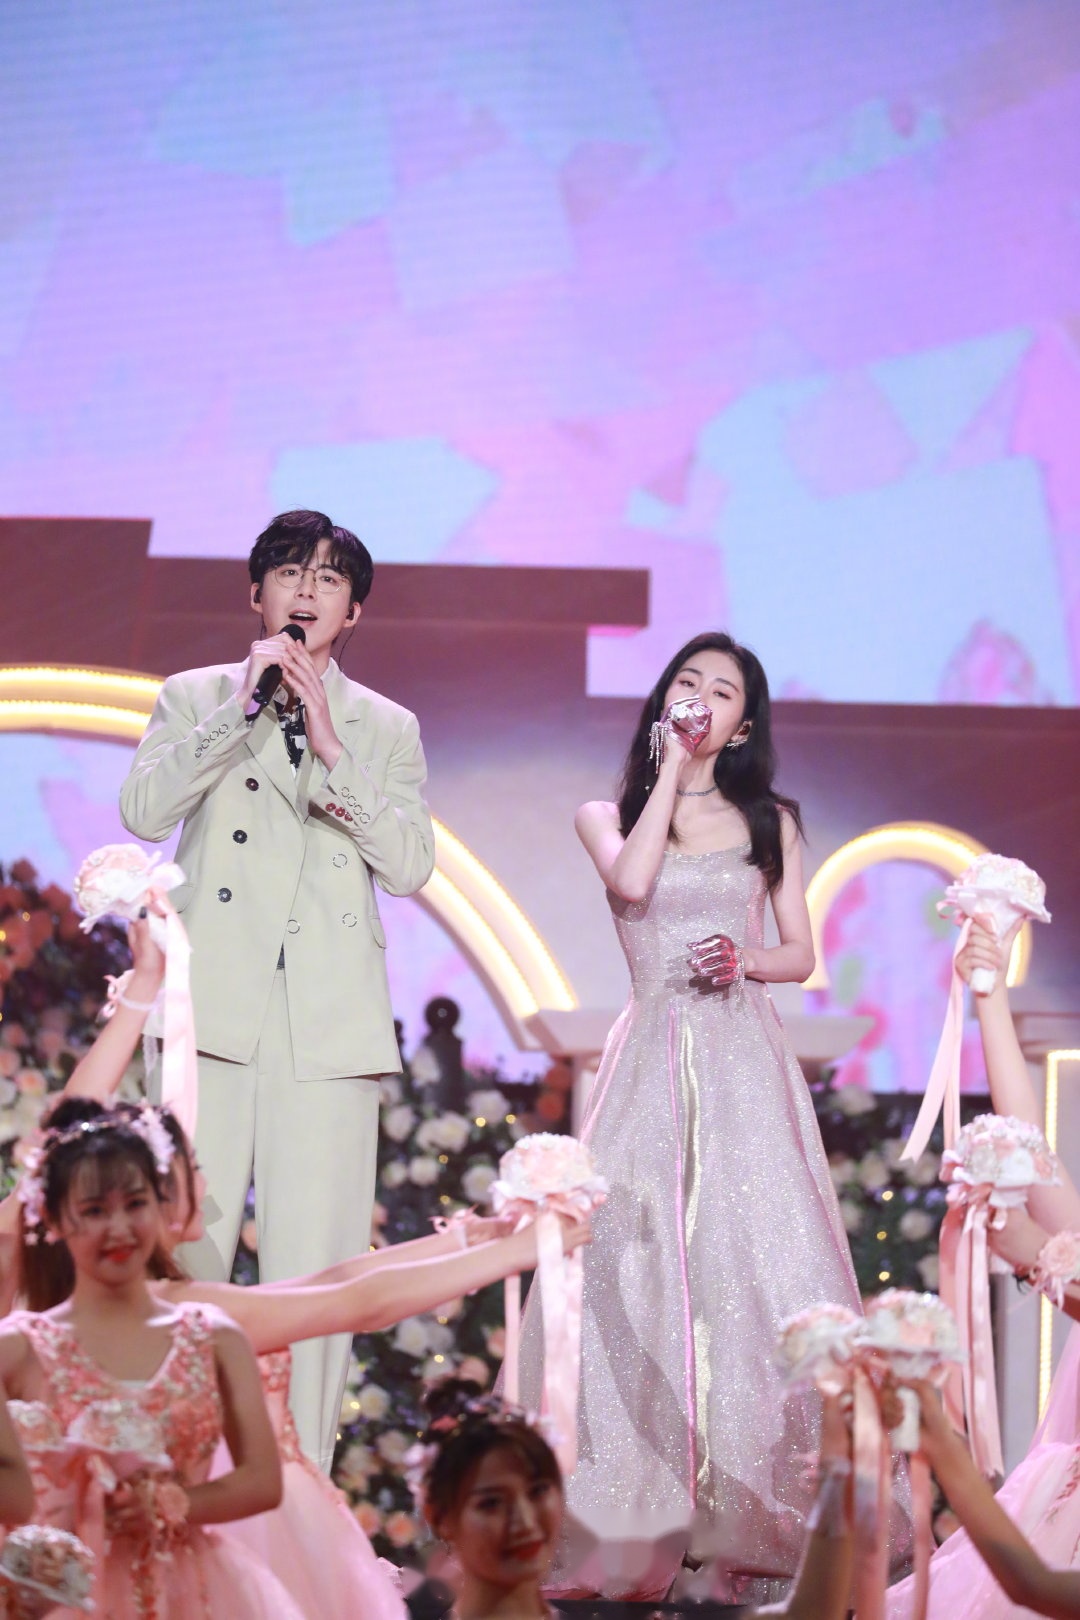 溢出屏幕的浪漫,张碧晨和刘宇宁特别演绎的《给你们》